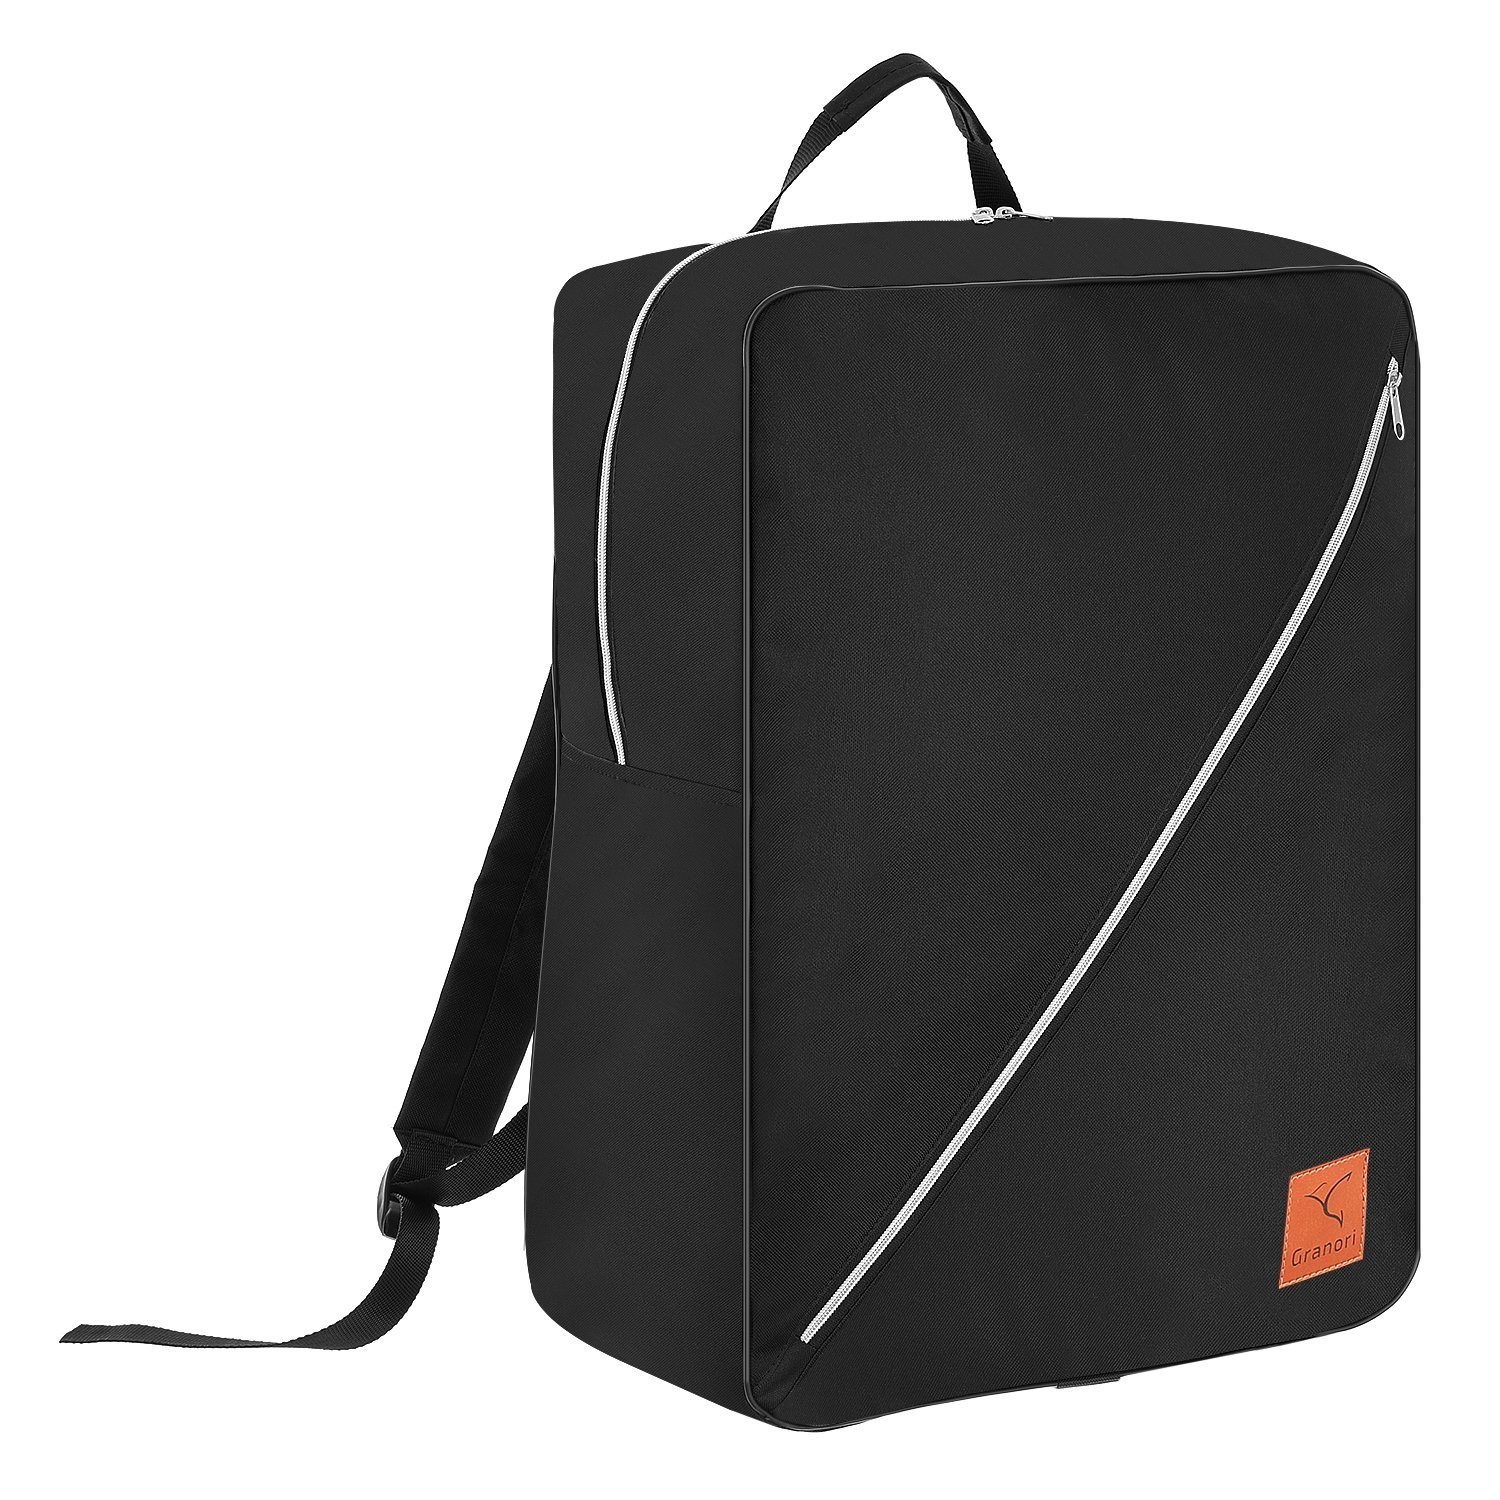 Granori Reiserucksack 55x40x20 cm XL Handgepäck gemäß IATA Empfehlung – leicht & viel Platz, über 40l Fassungsvermögen, mit abschließbarem Hauptfach